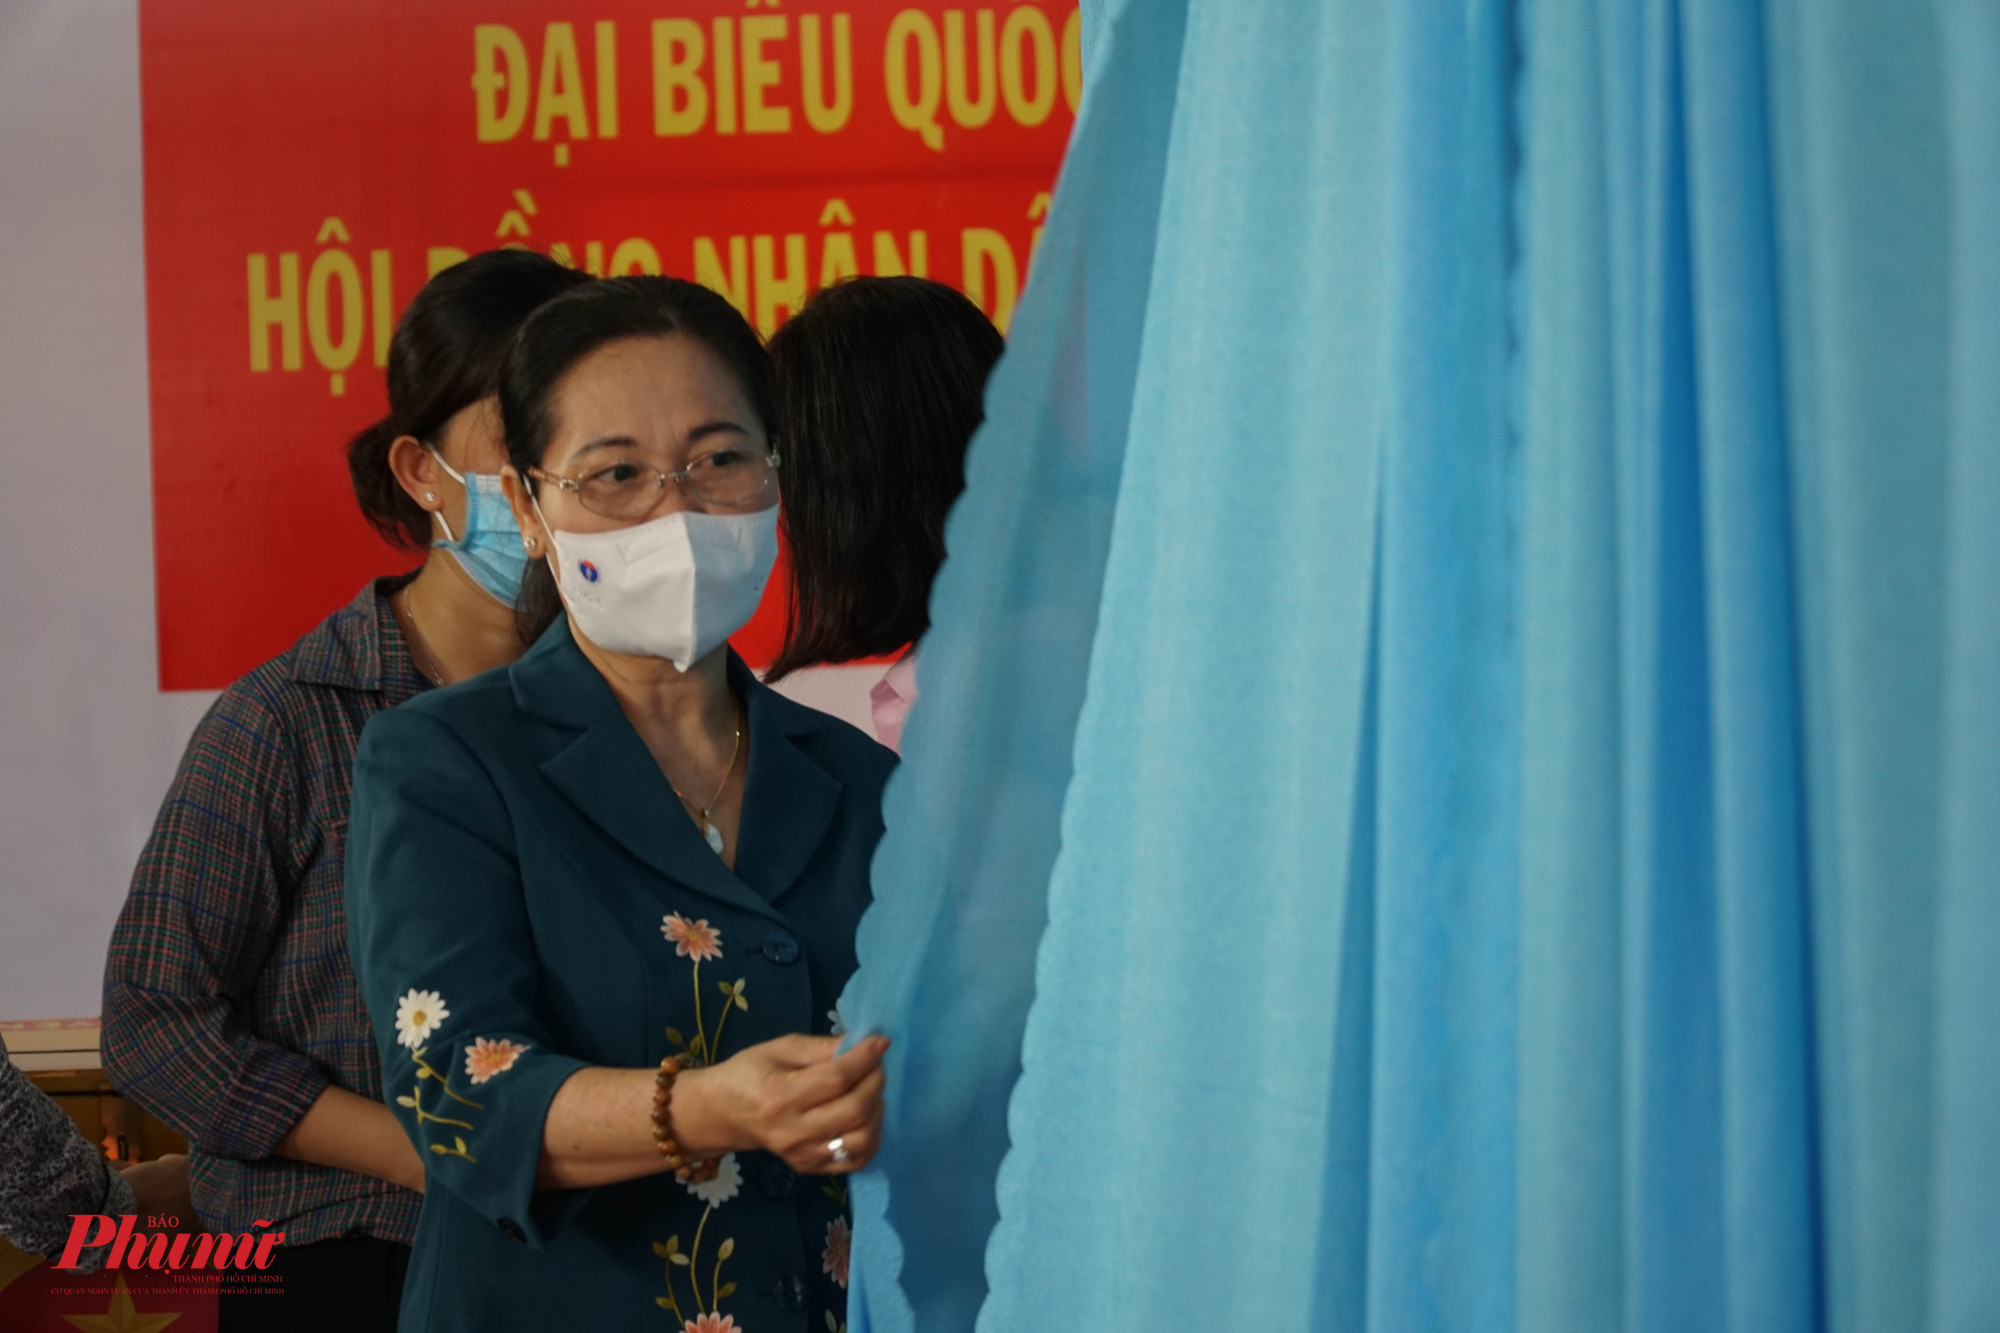 Bà Nguyễn Thị Lễ kiểm tra tất cả khâu chuẩn bị cho ngày bầu cử 23/5 tại khu vực bầu cử số 041